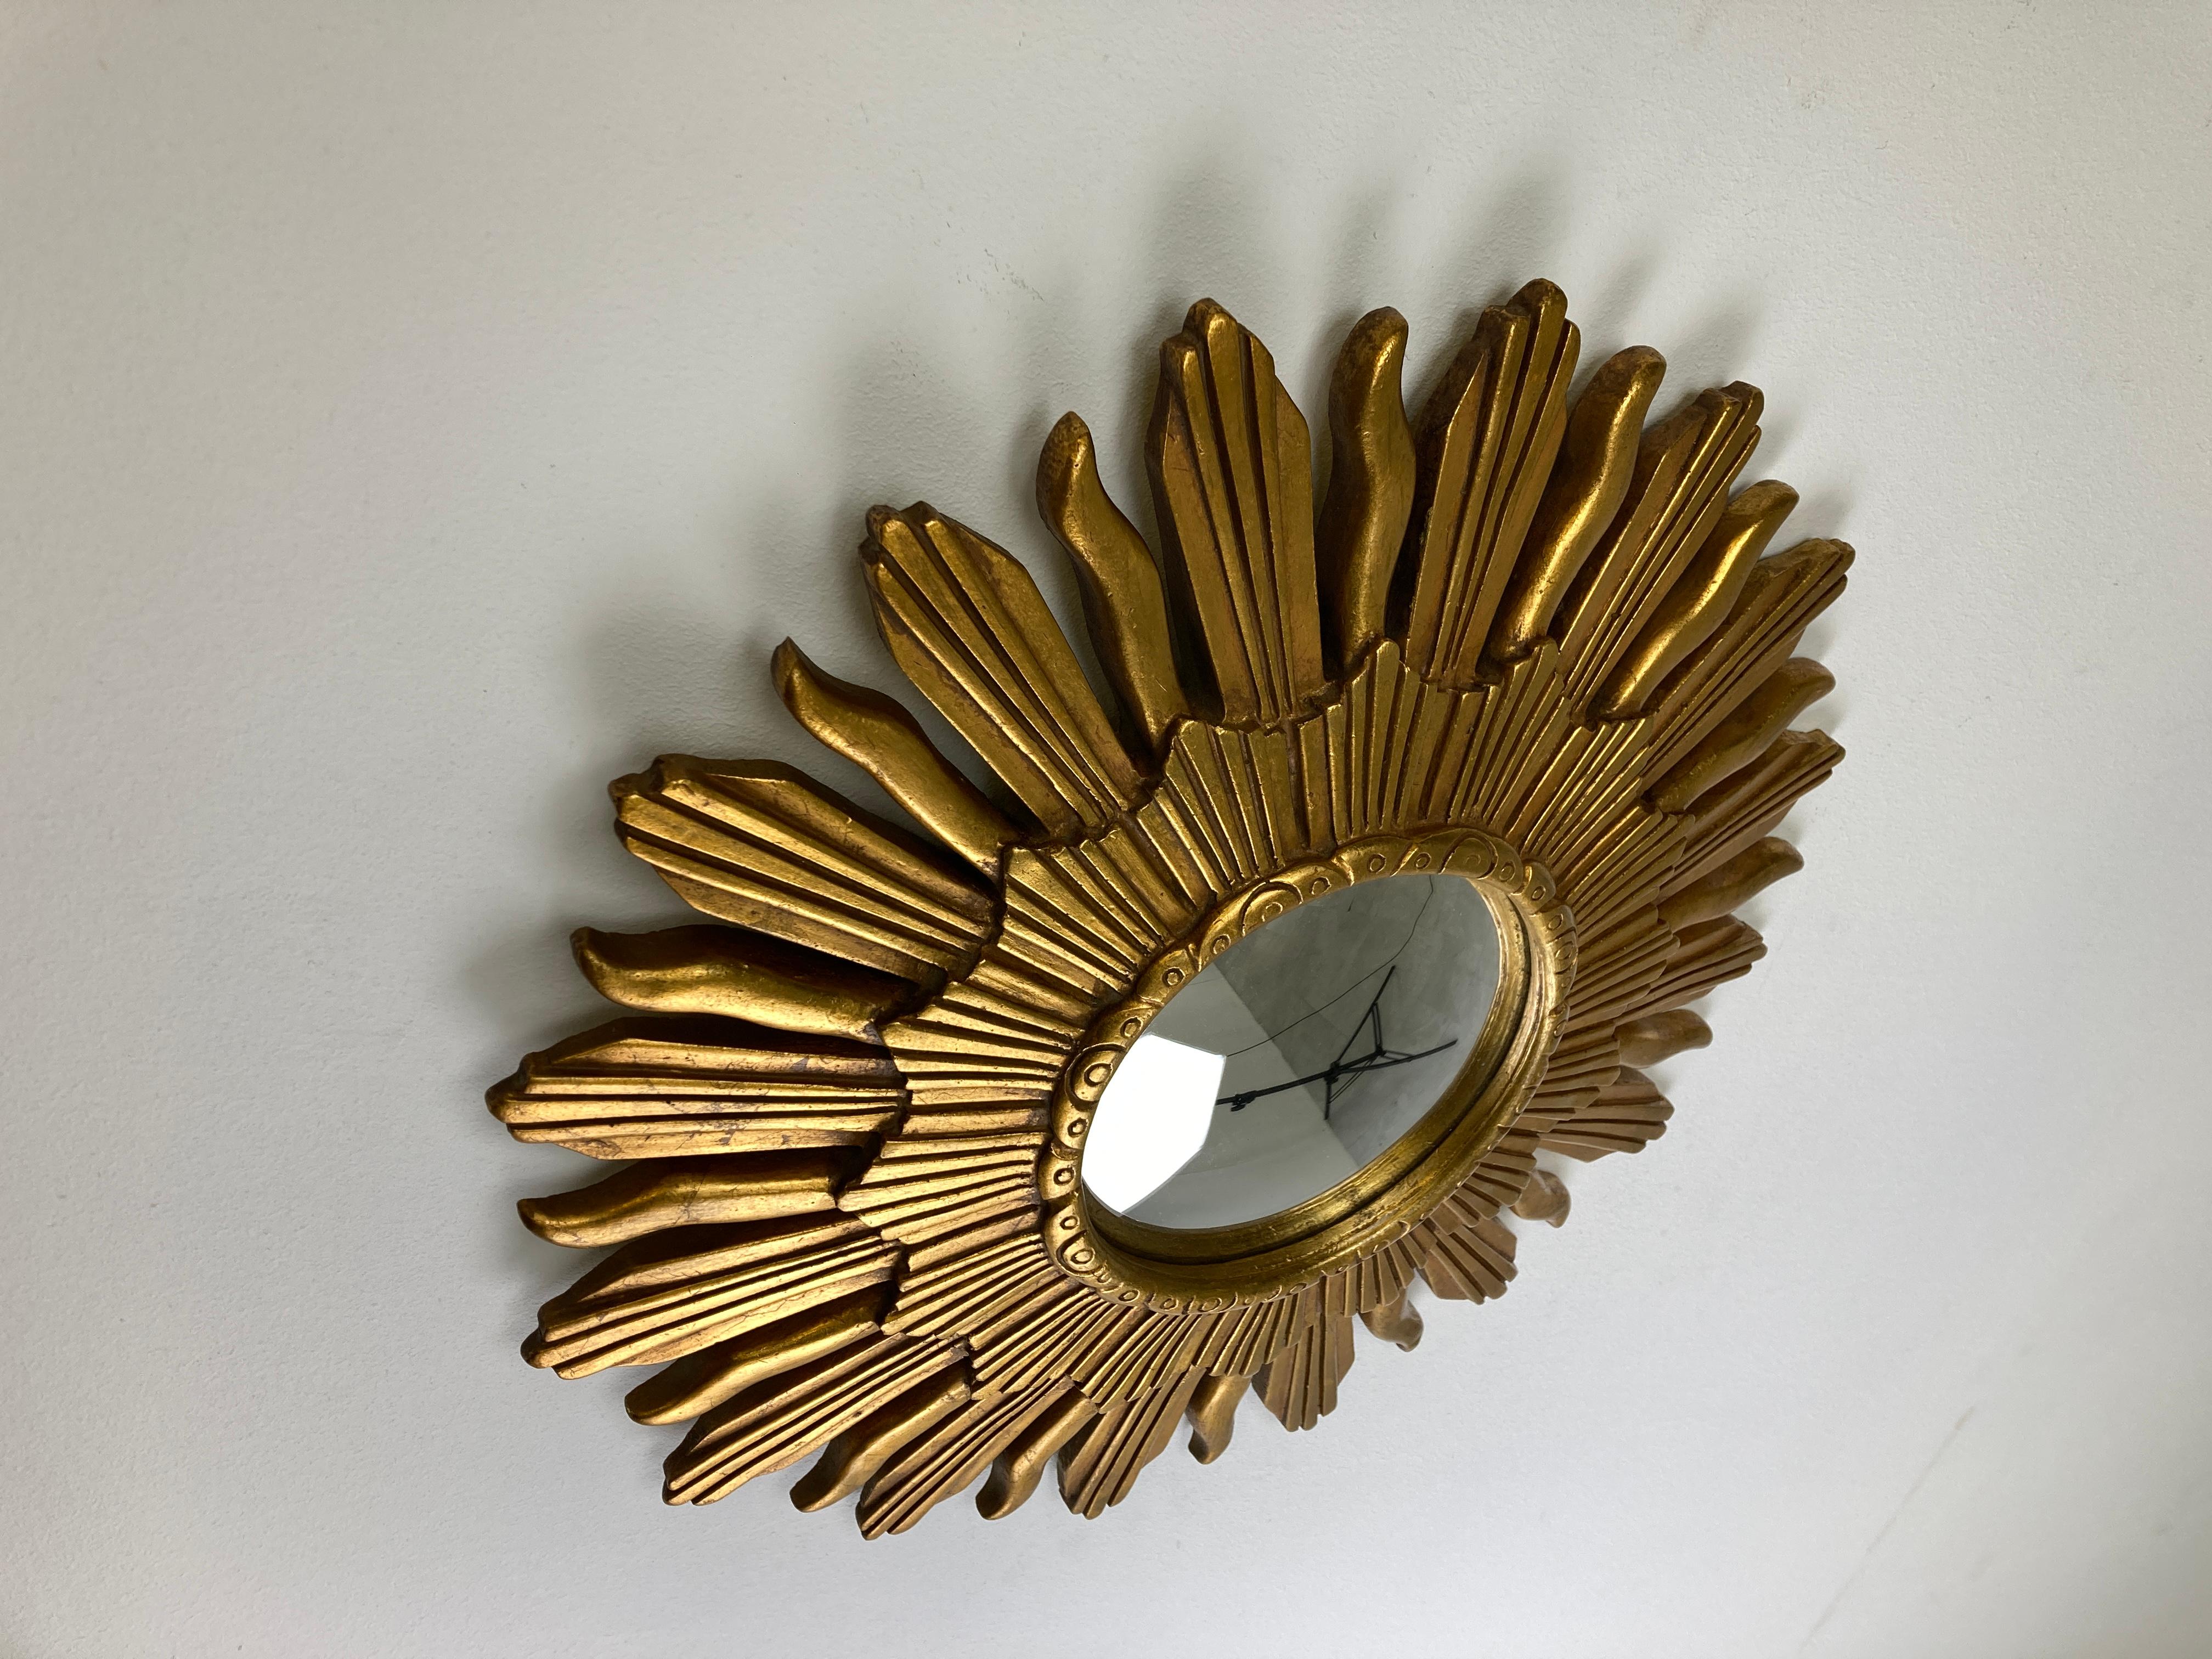 Miroir soleil en résine dorée avec verre miroir convexe.

Le miroir doré est en bon état.

Années 1960 - fabriqué en Belgique.

Dimensions :
Diamètre : 47cm/18.50